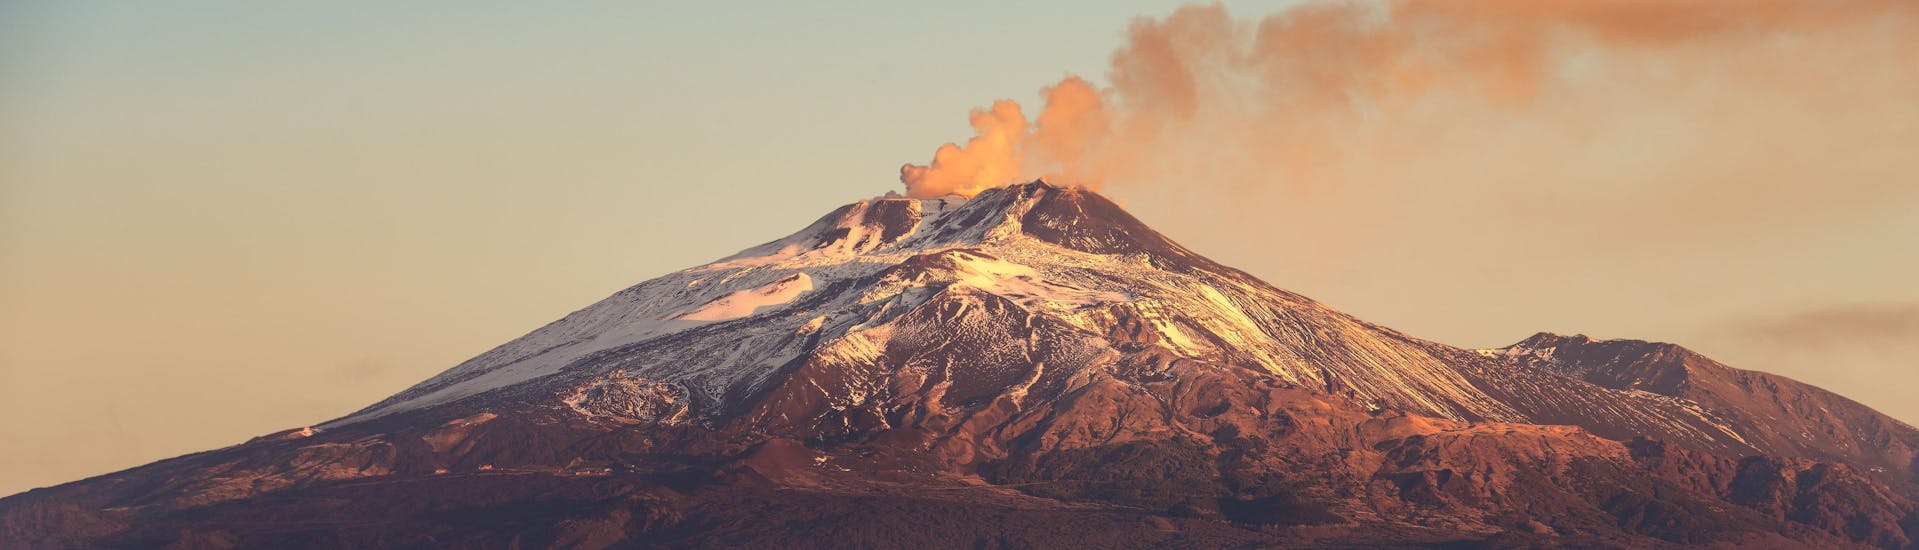 Blick auf den Ätna, der ein beliebtes Ziel für Vulkantouren und Wanderungen ist.